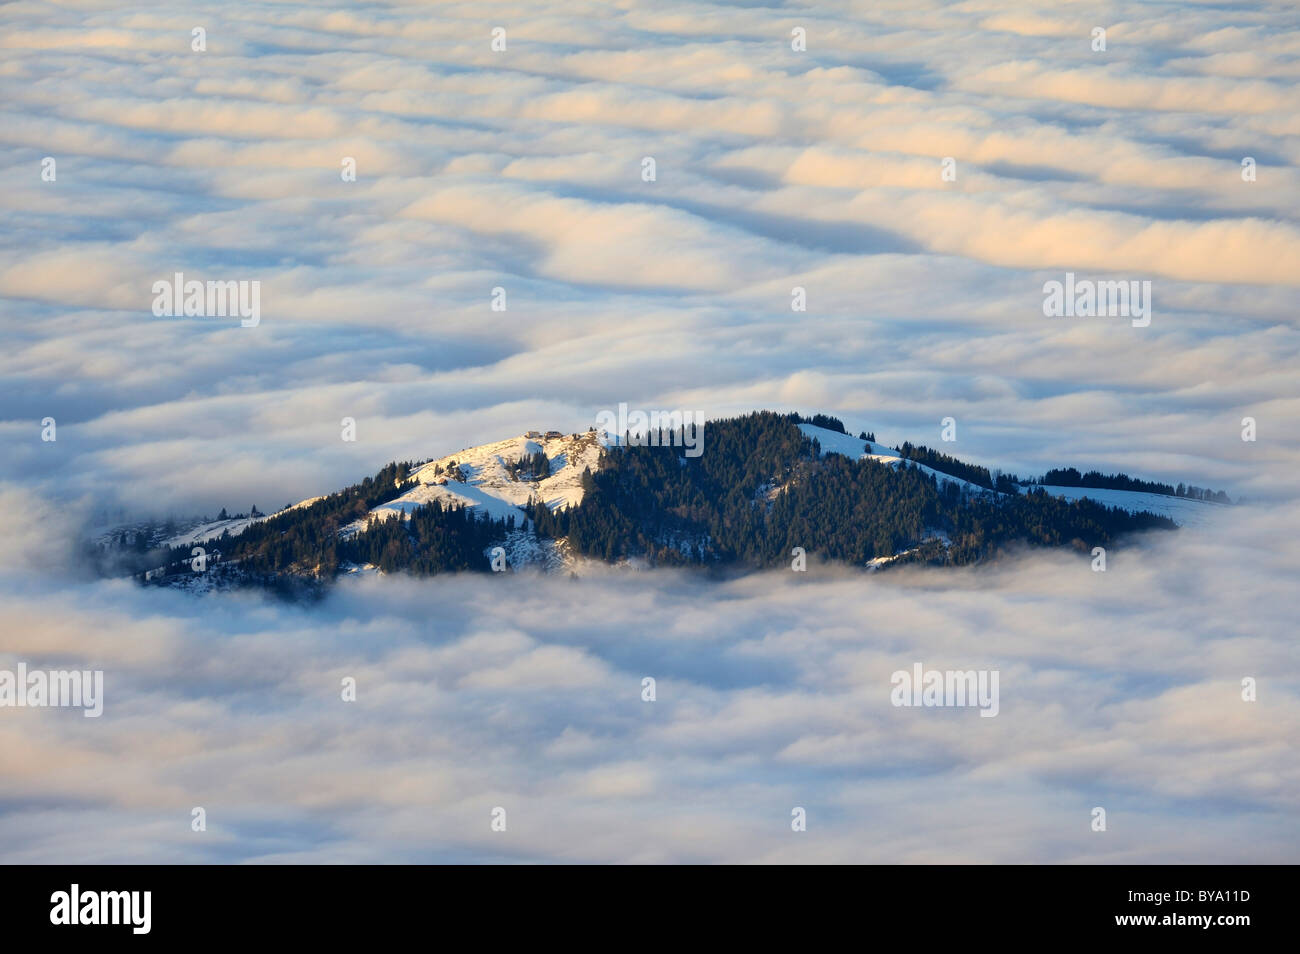 Hundwiler Hoehe montagna, 1309m, passando attraverso le nuvole, sulle colline della regione Appenzell, cantone di Appenzello Interno Foto Stock